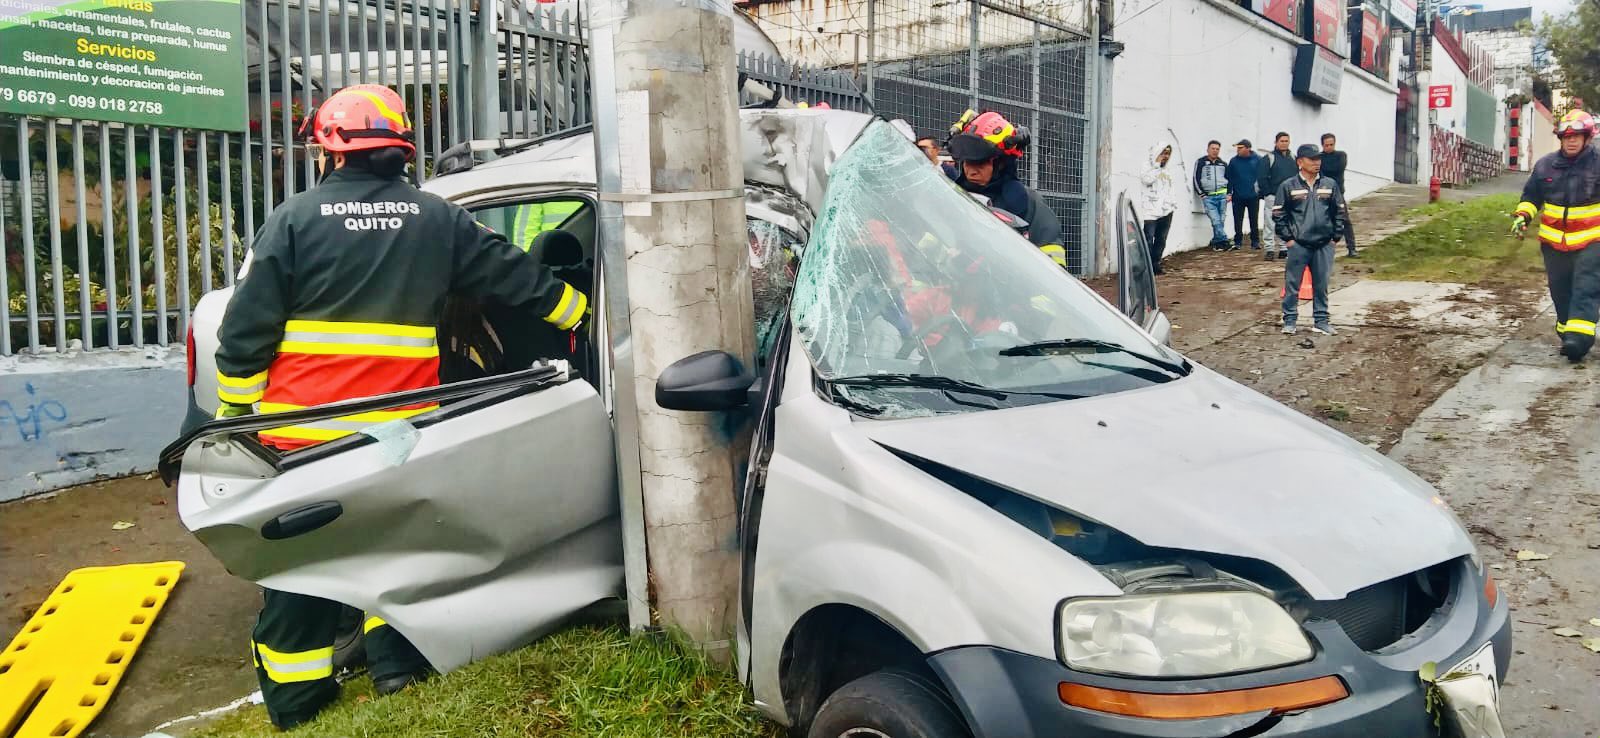 El siniestro de tránsito en El Condado dejó una víctima mortal. Foto: Cuerpo de Bomberos Quito